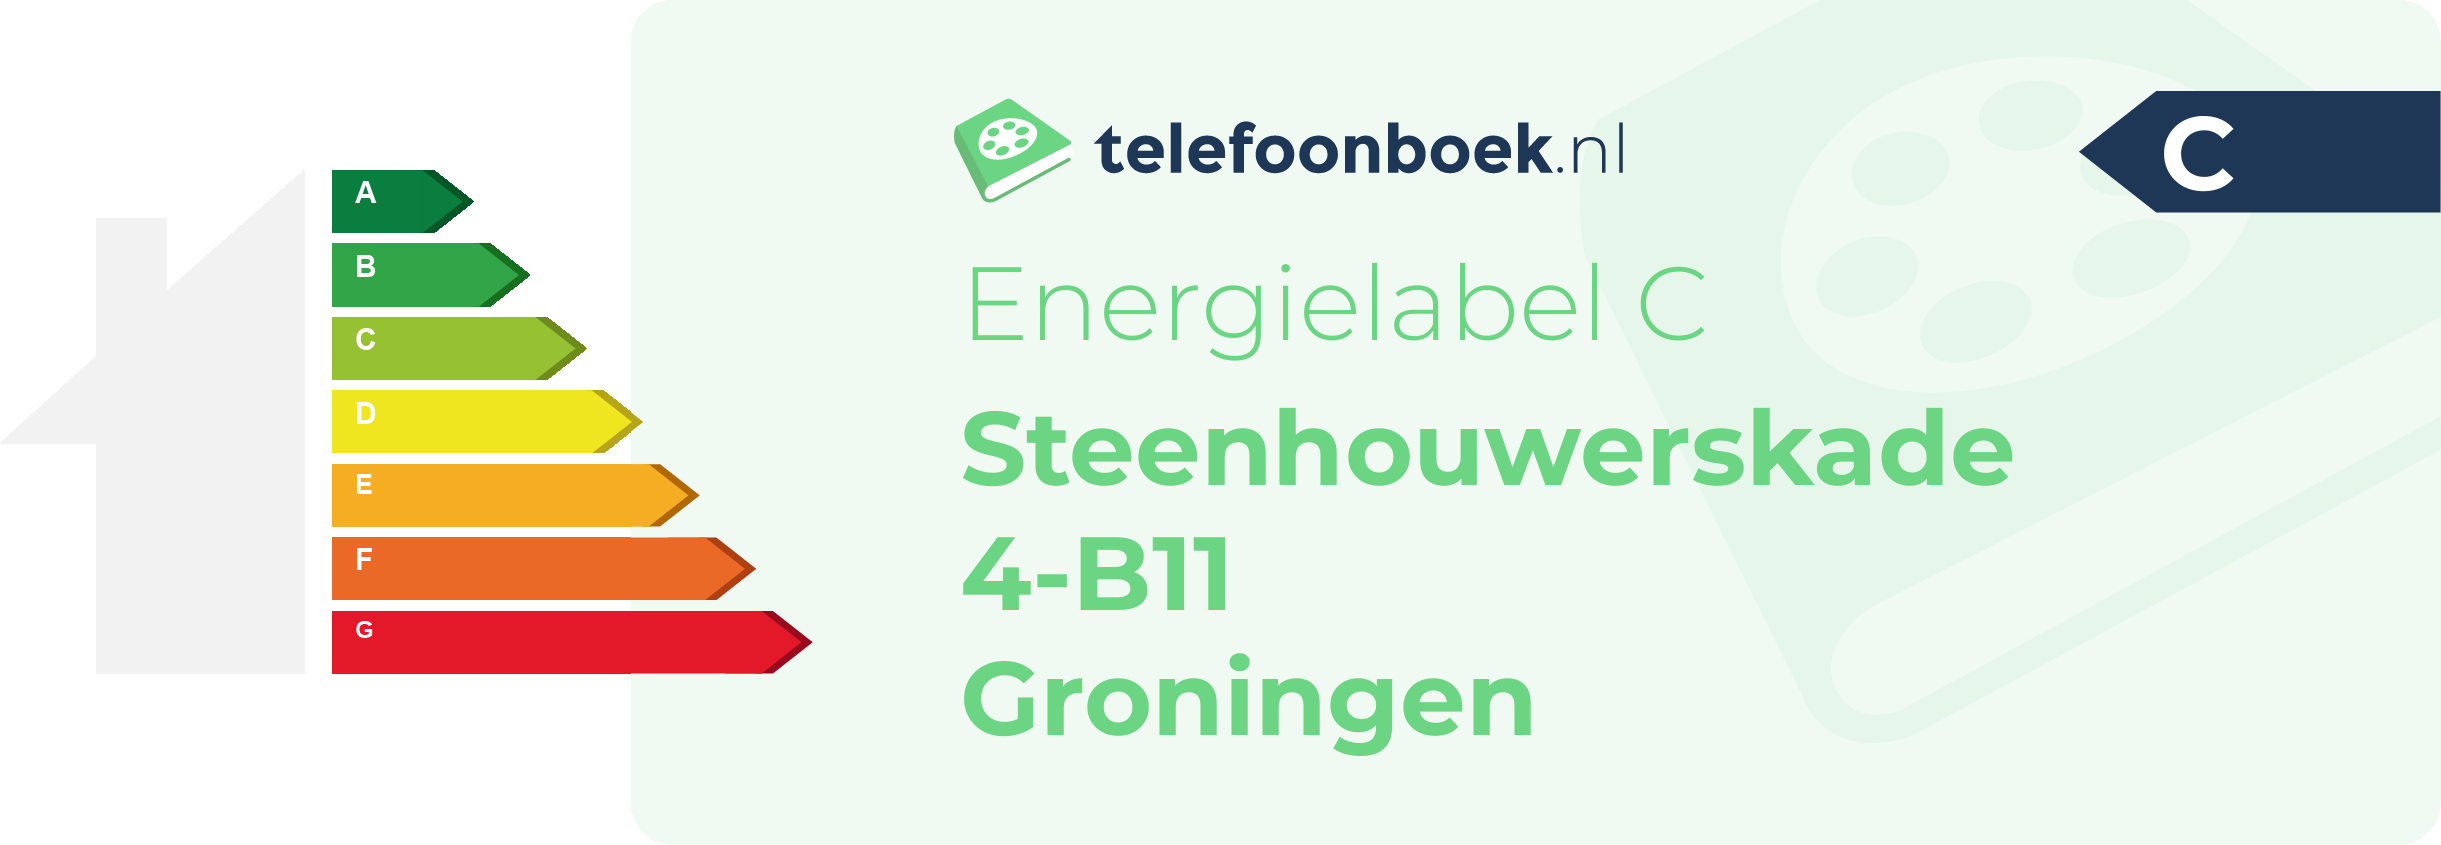 Energielabel Steenhouwerskade 4-B11 Groningen